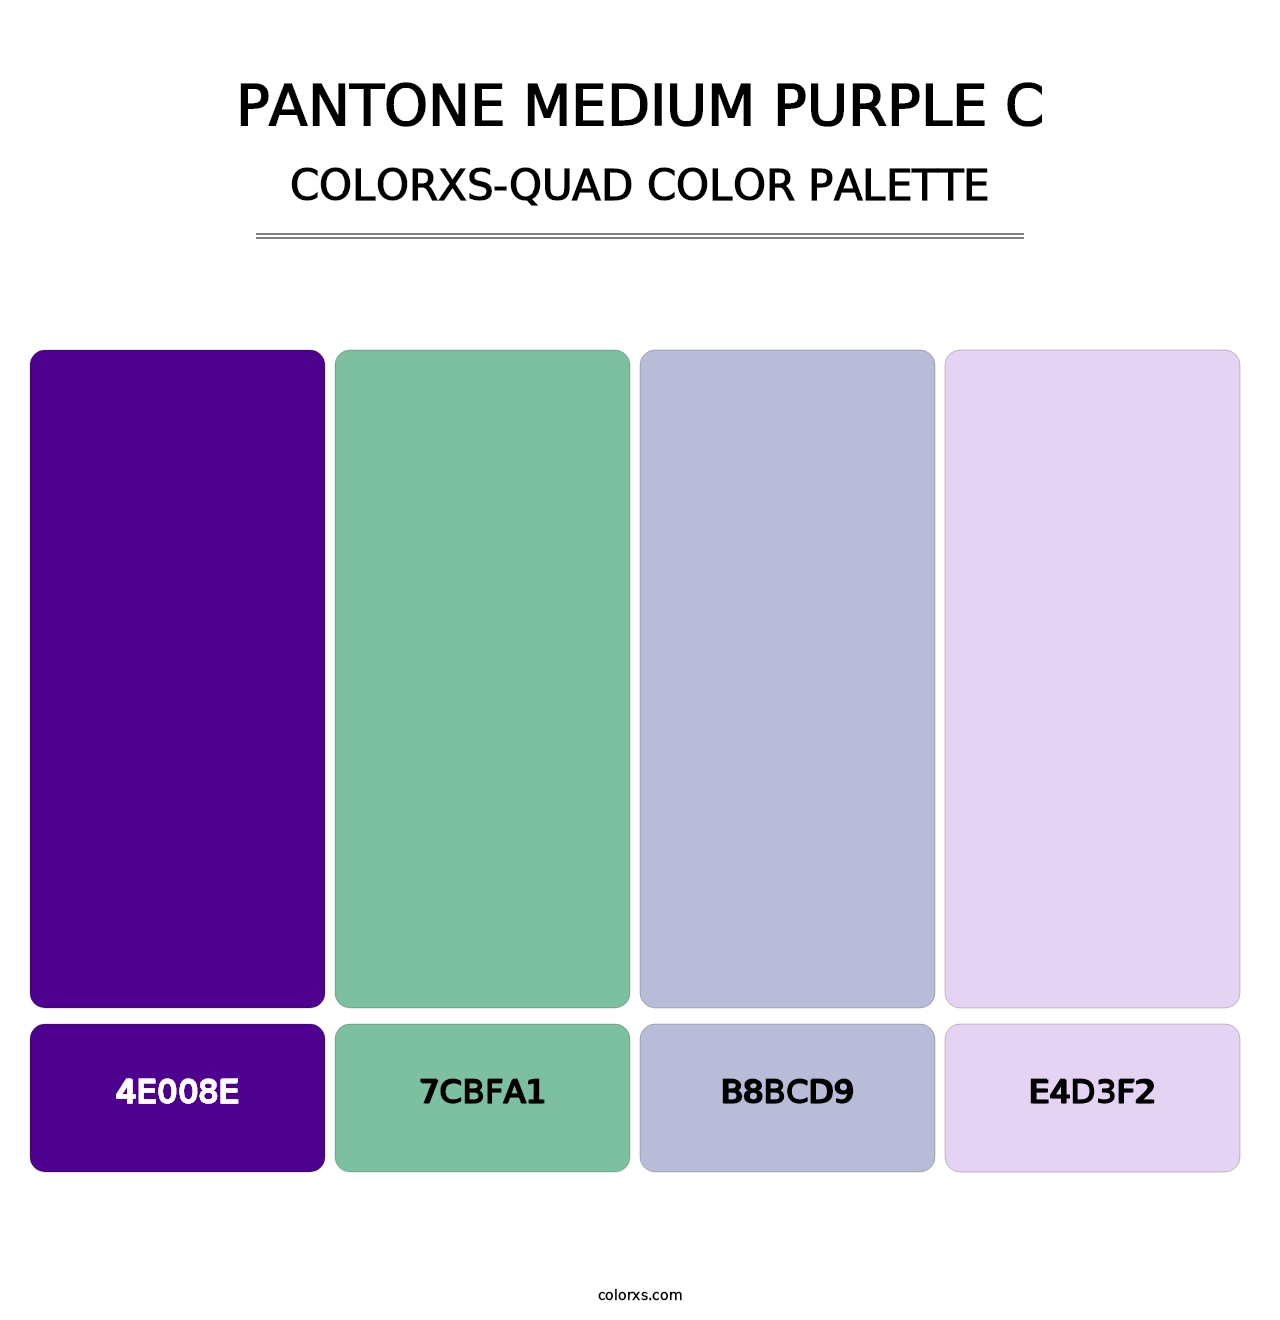 PANTONE Medium Purple C - Colorxs Quad Palette